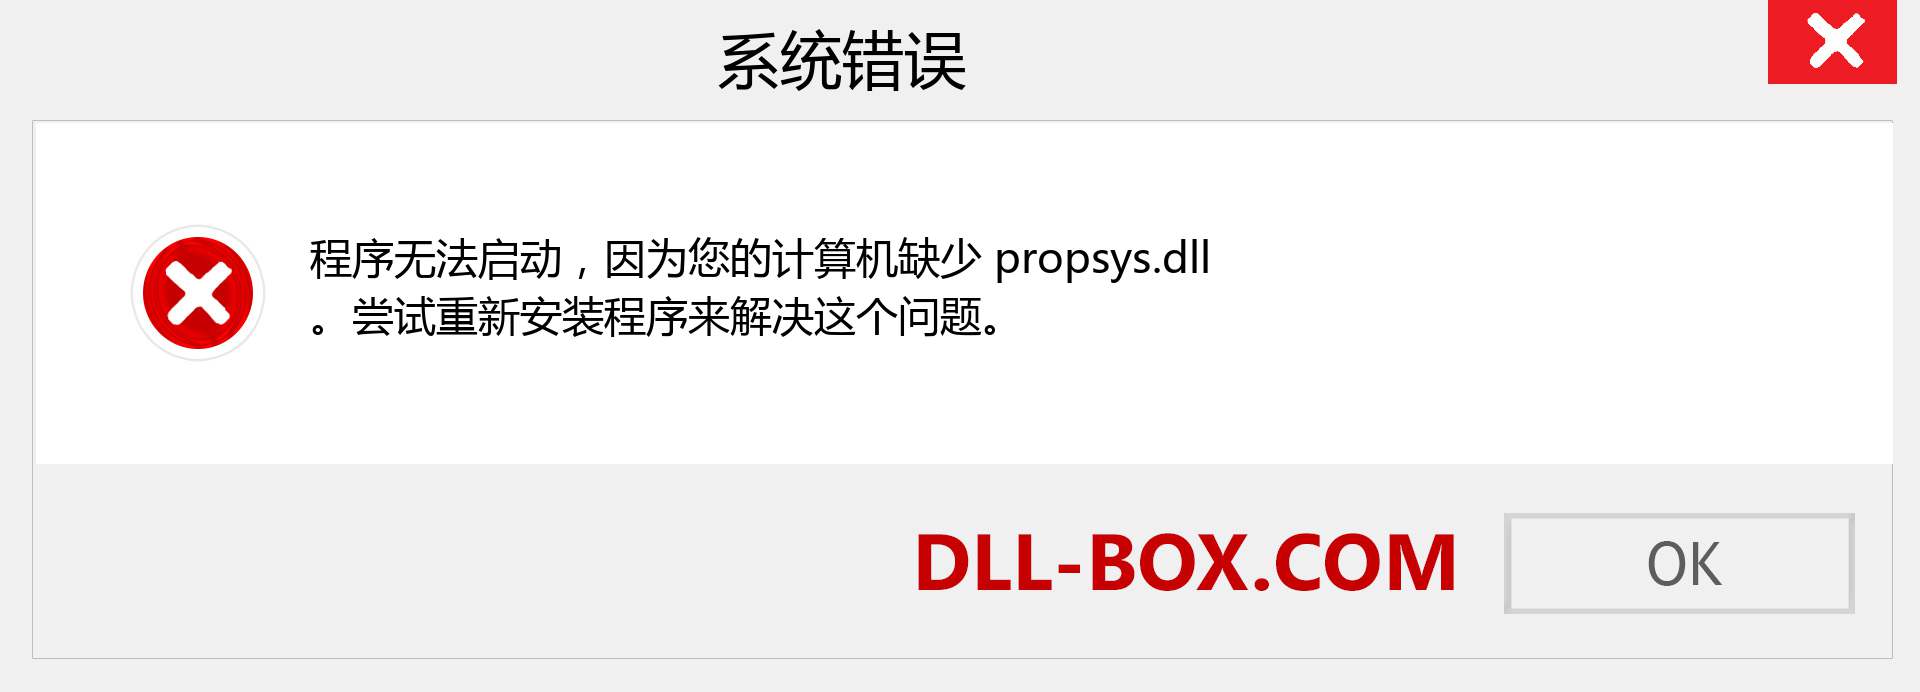 propsys.dll 文件丢失？。 适用于 Windows 7、8、10 的下载 - 修复 Windows、照片、图像上的 propsys dll 丢失错误